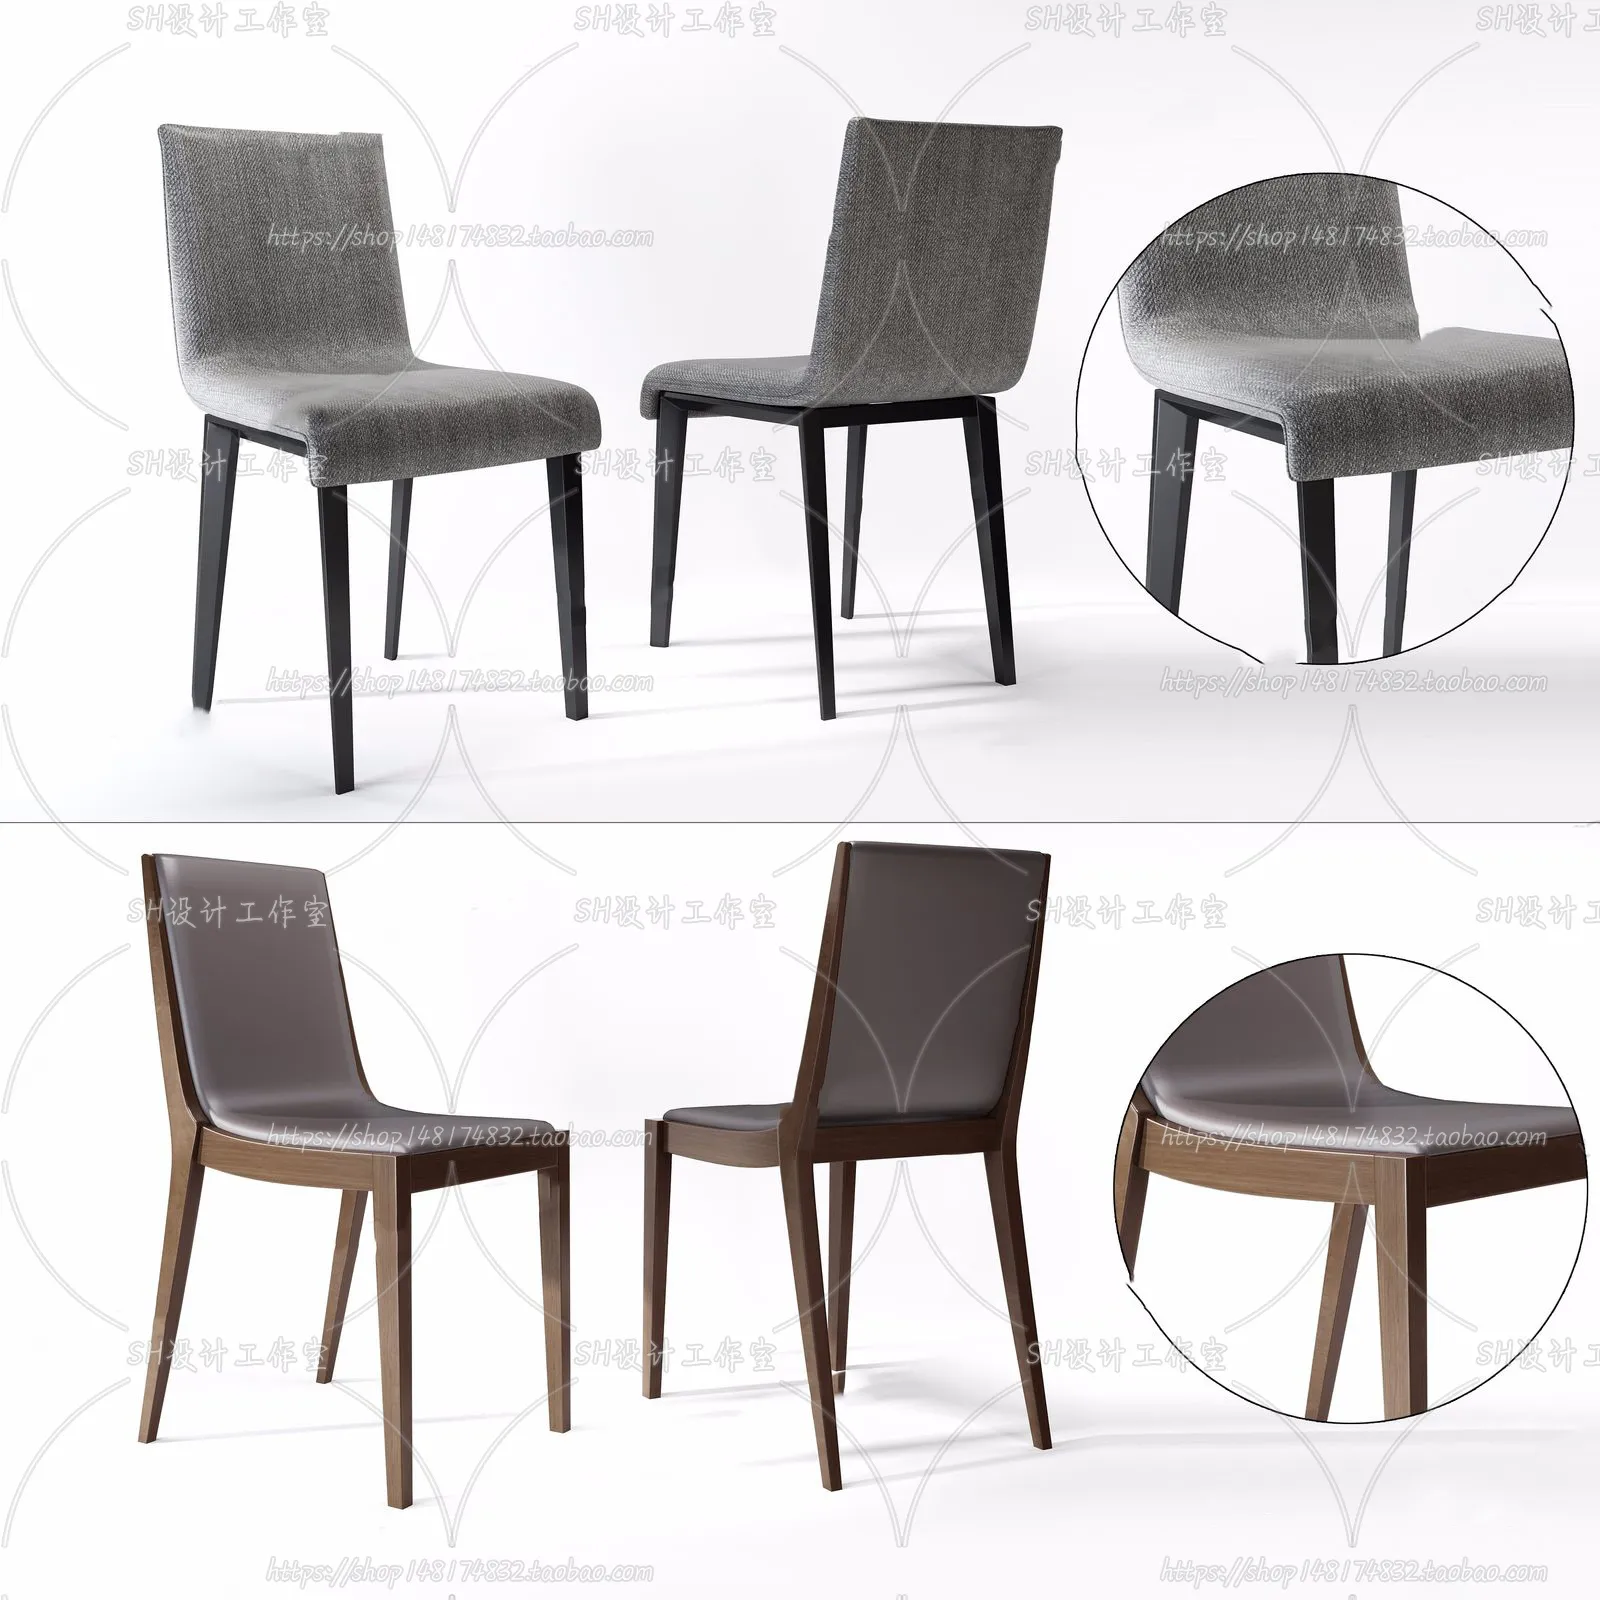 Chair – Single Chair 3D Models – 2017